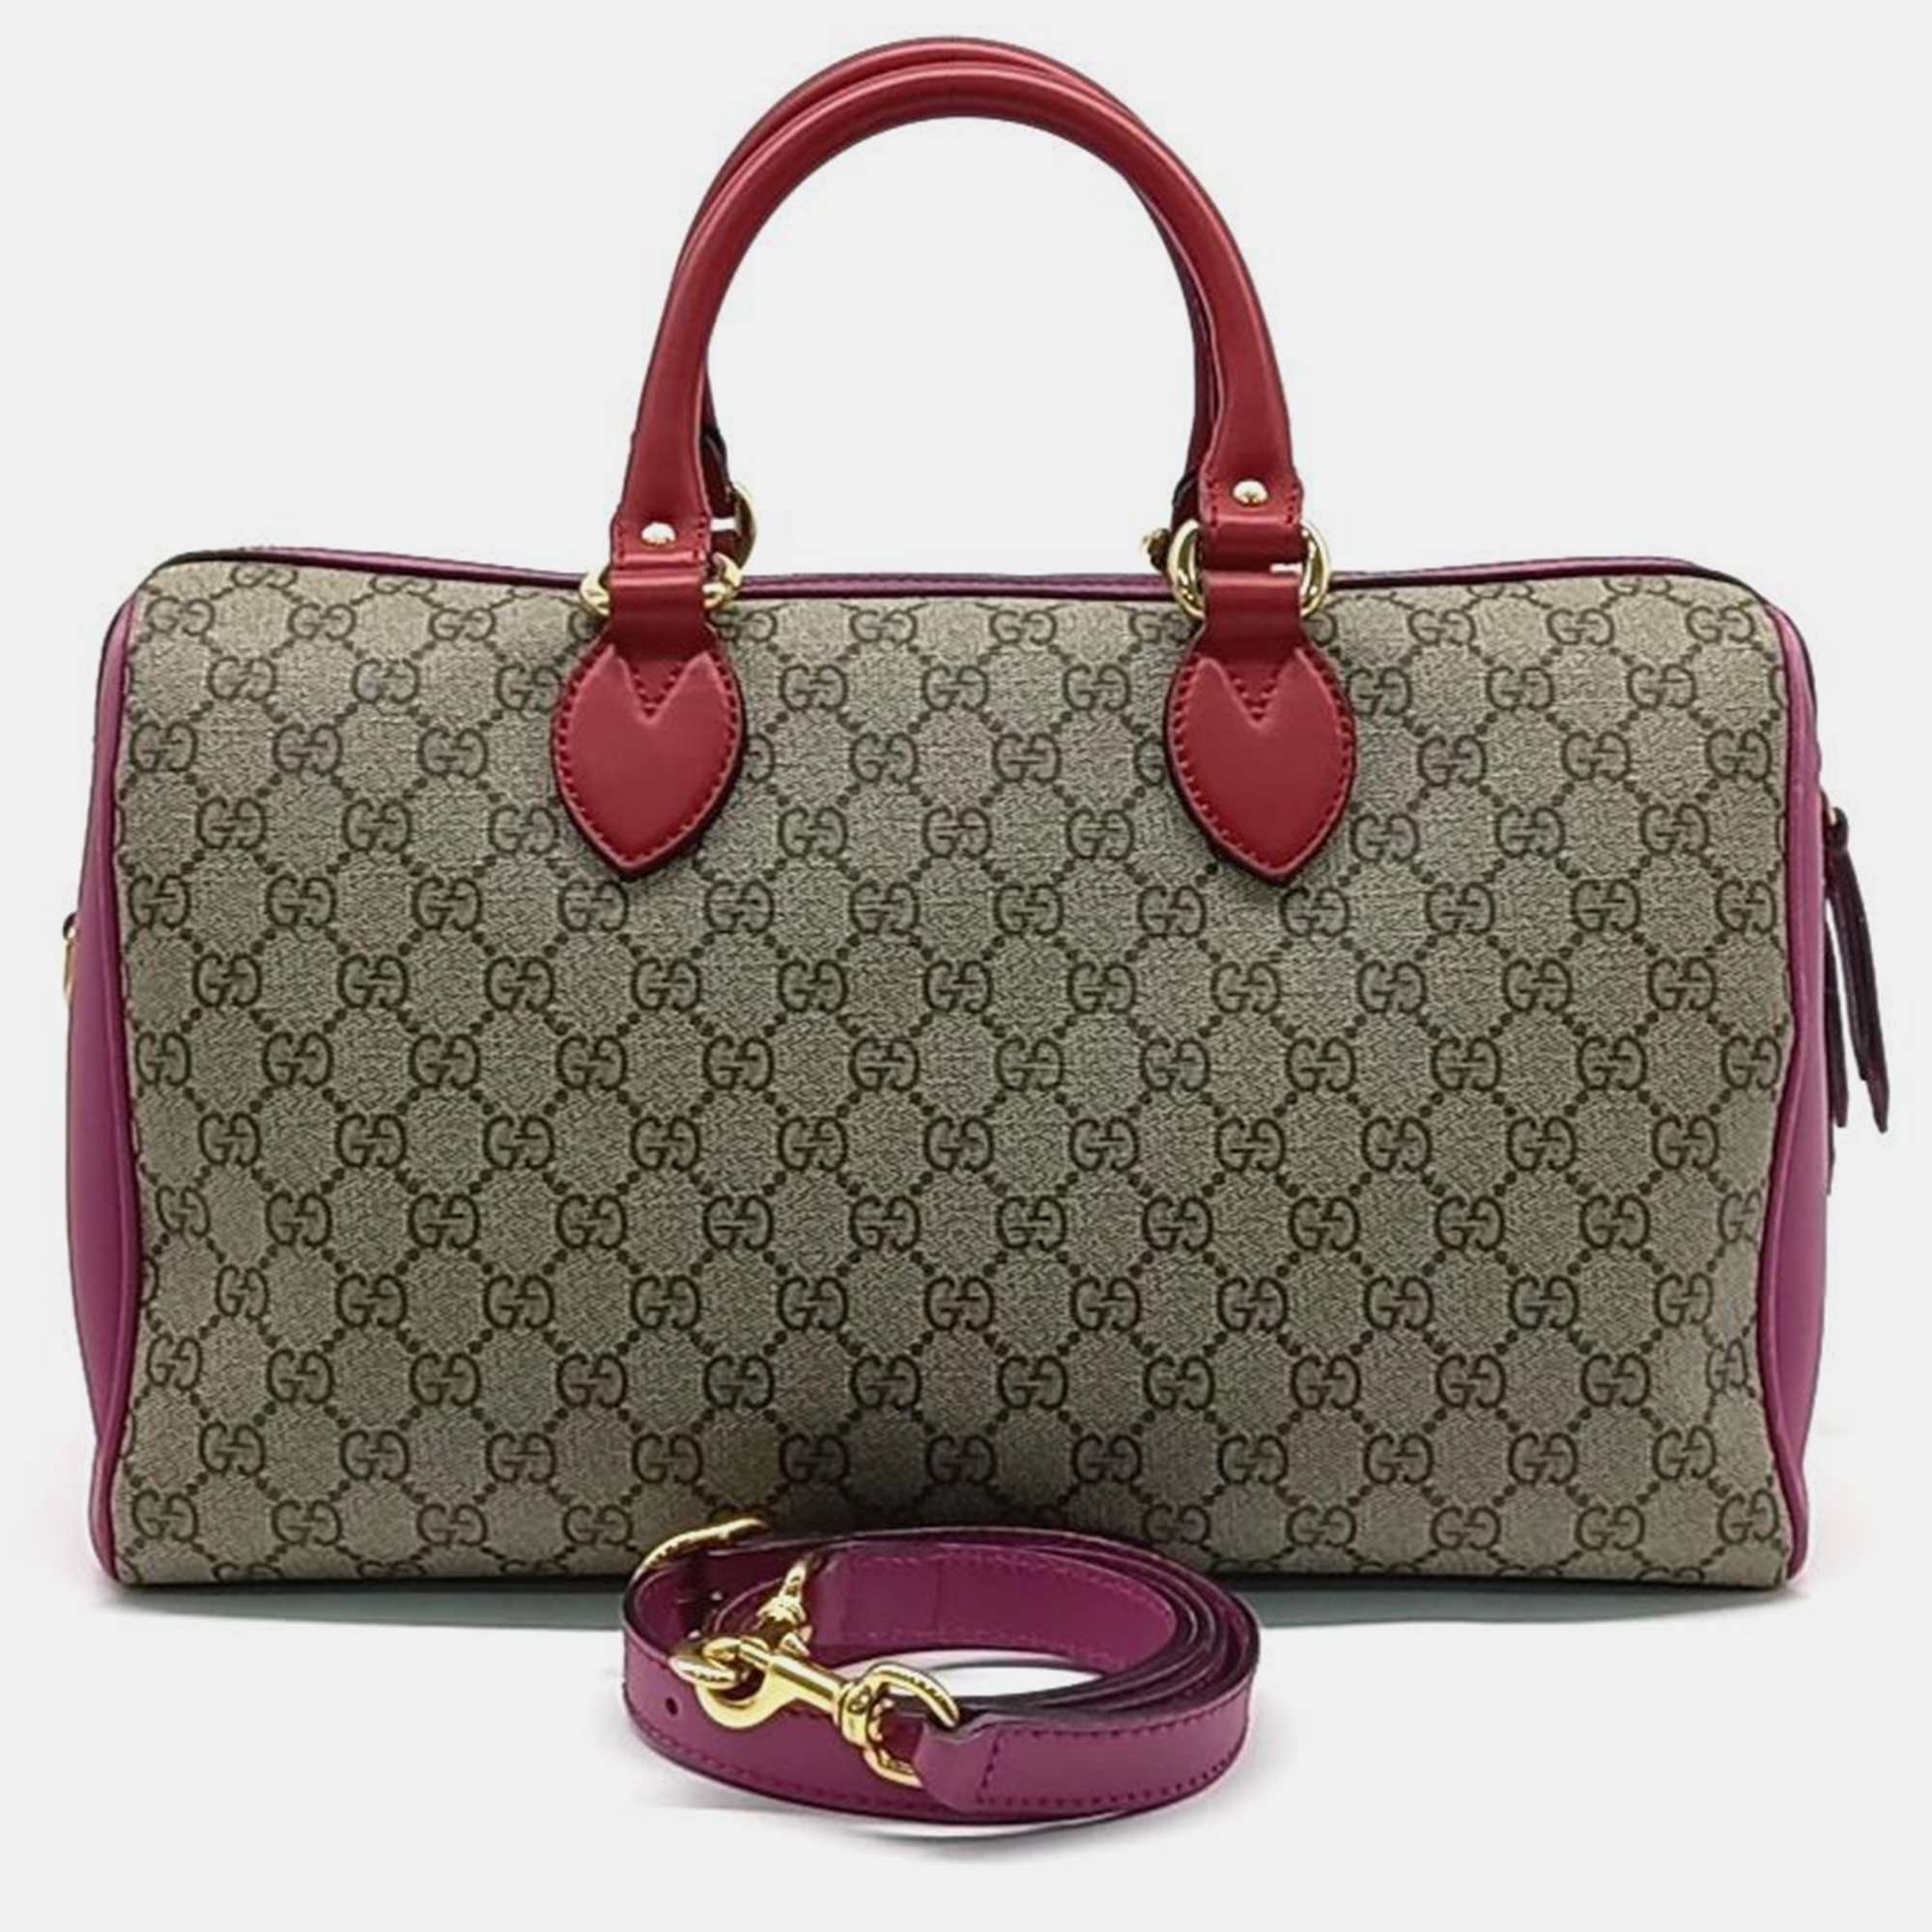 Gucci pvc supreme boston bag (409527)